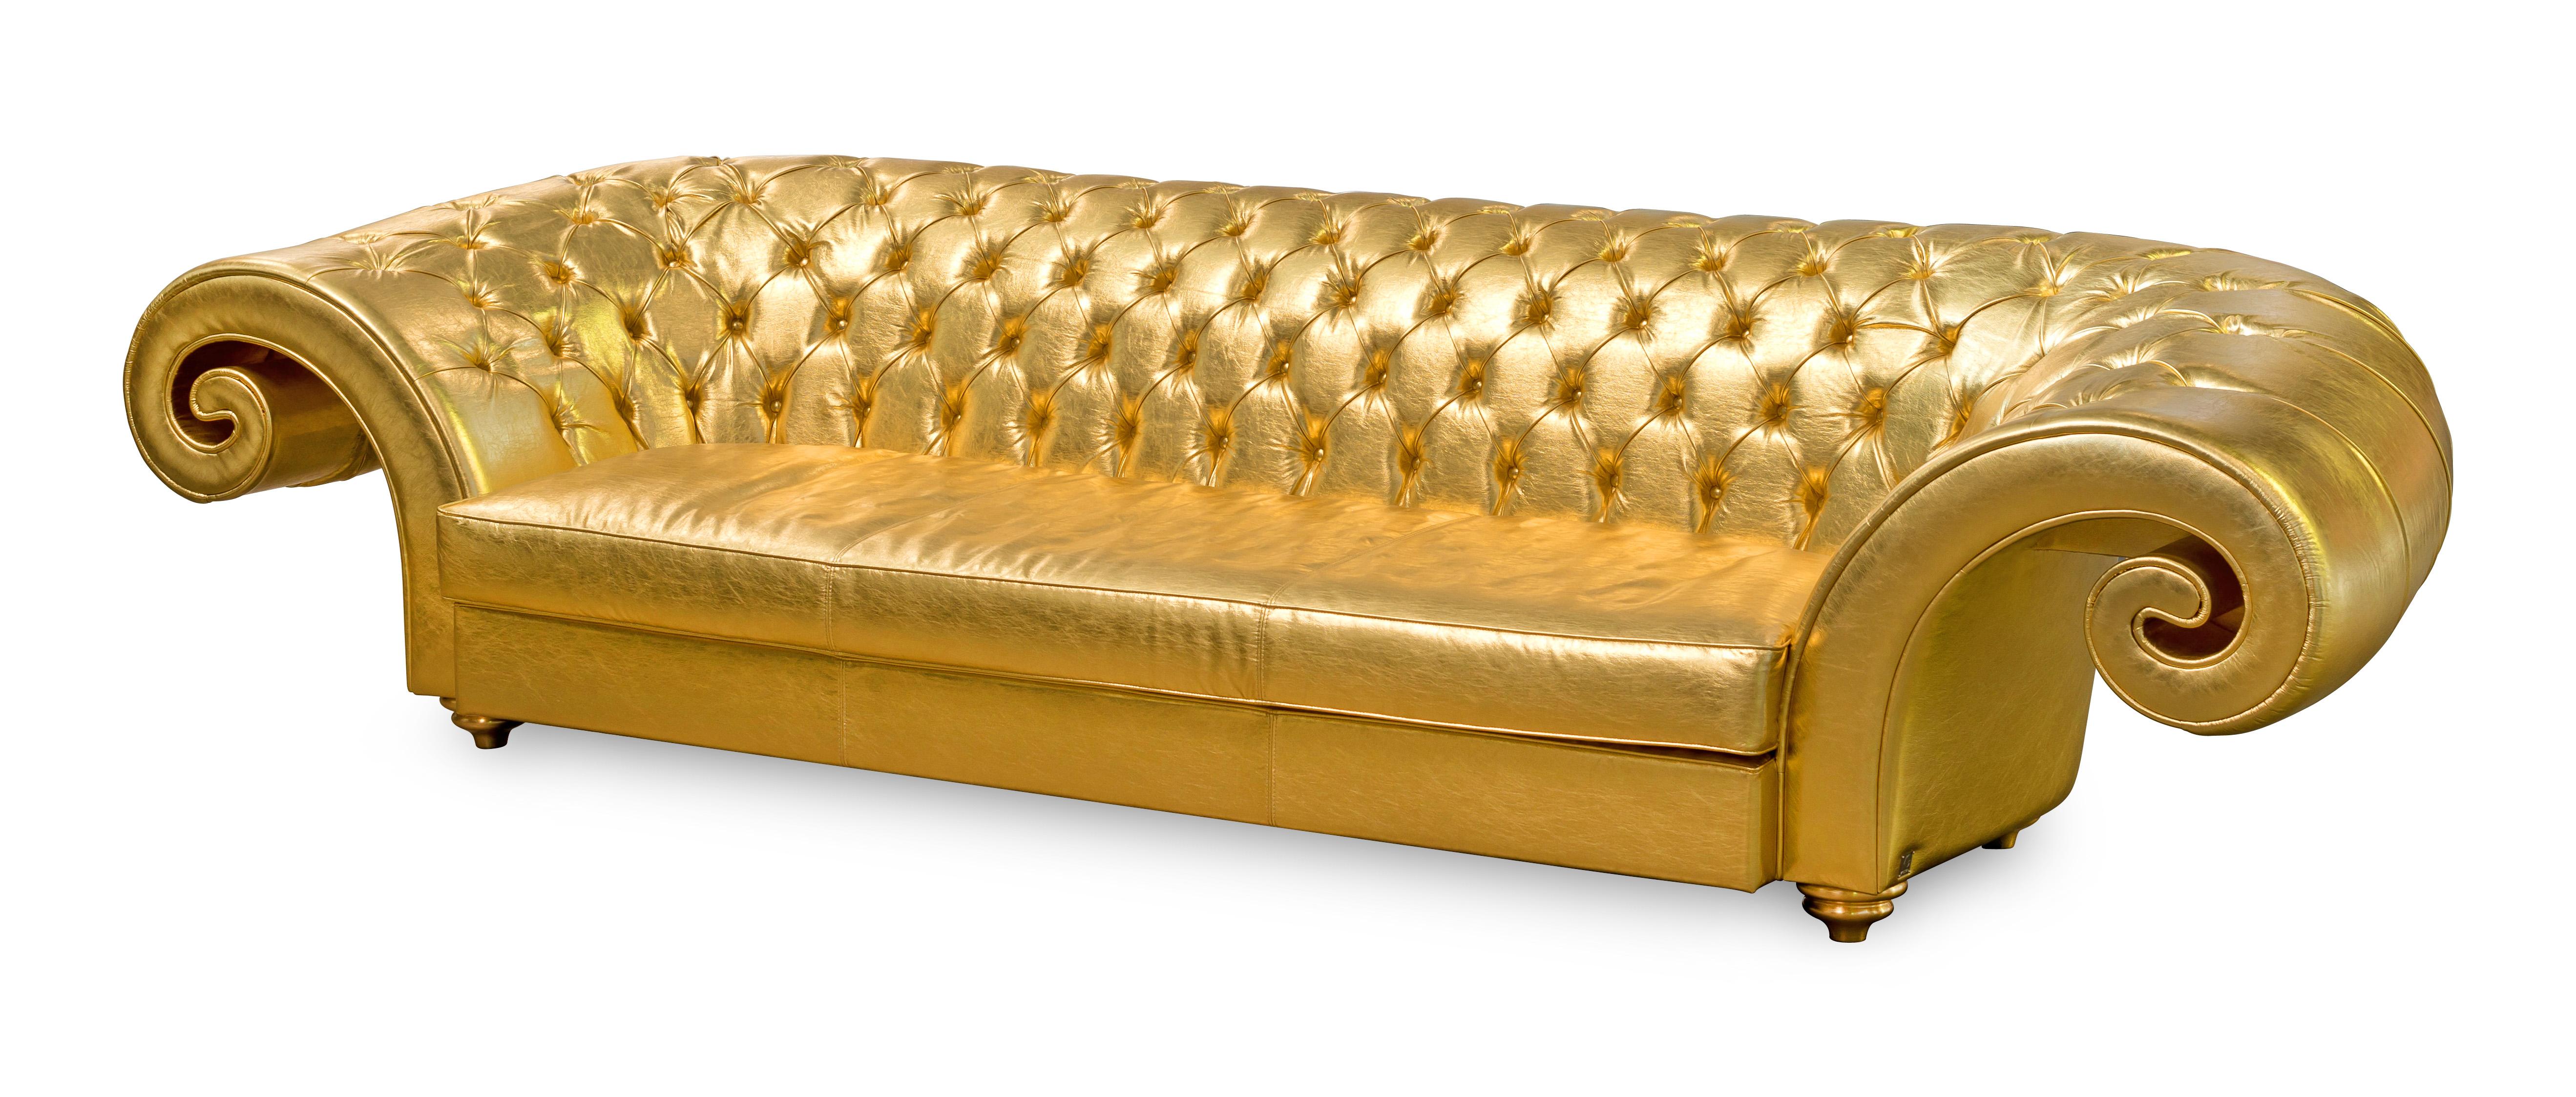 Les meubles VG représentent le luxe en termes d'exclusivité, de distinction et de haute qualité. Ils sont le résultat d'un design sophistiqué et exclusif à l'identité forte et sont le fruit d'une attention méticuleuse portée aux détails typiques des